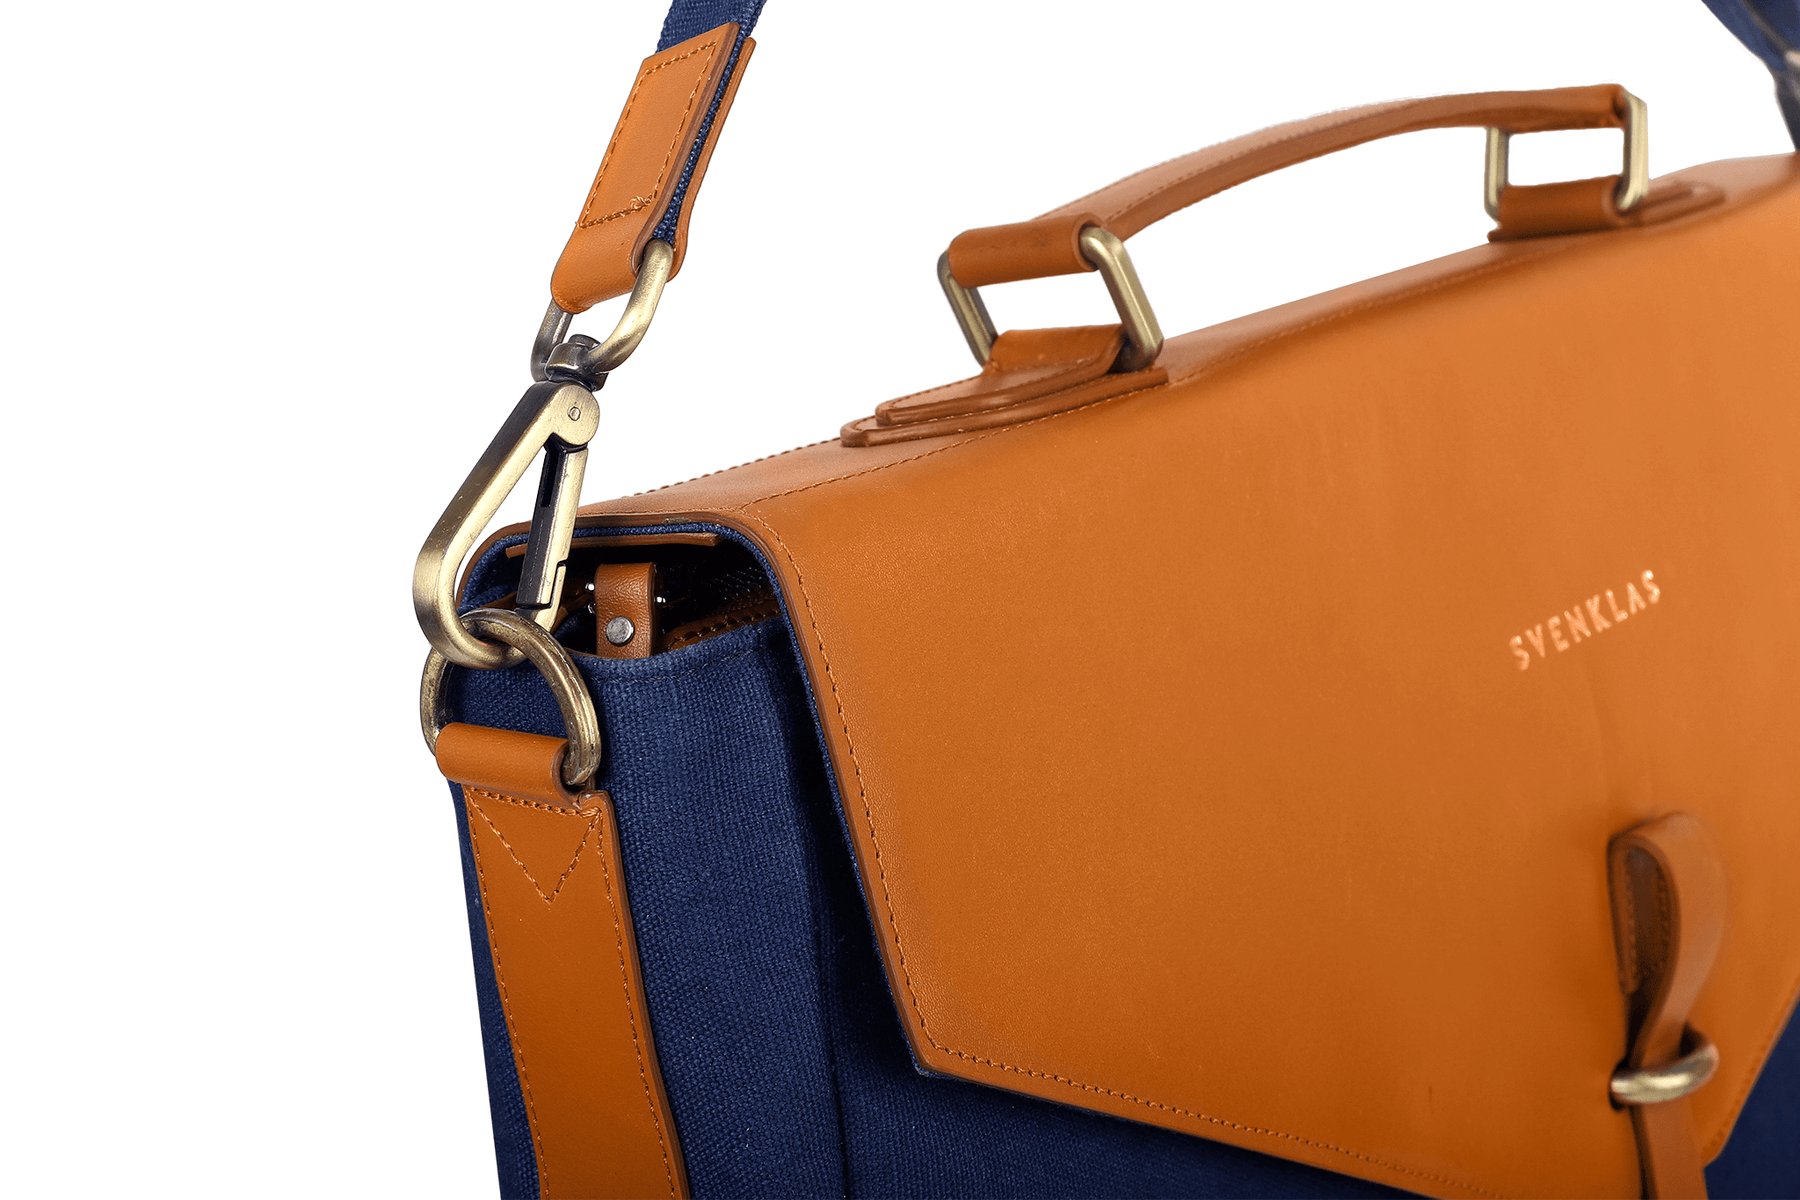 Svenklas astrid cognac blue briefcase